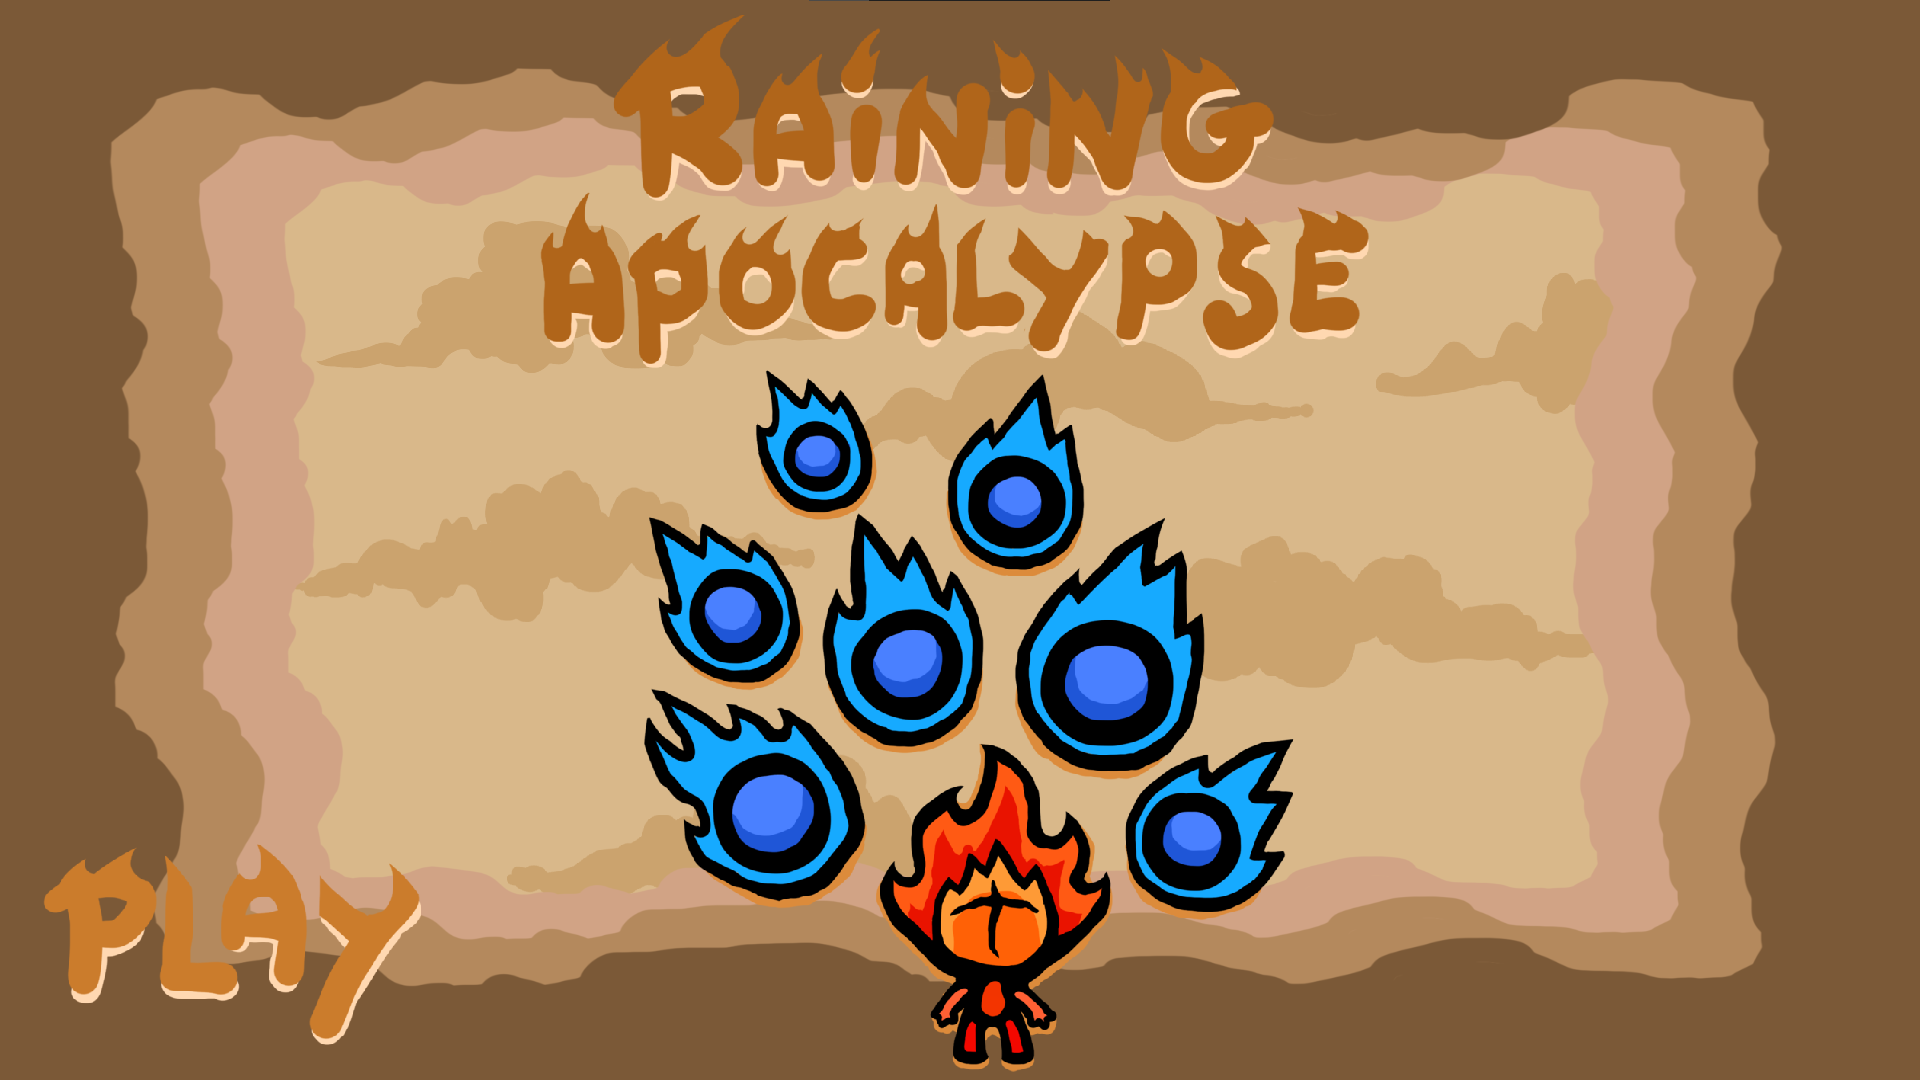 Raining Apocalypse